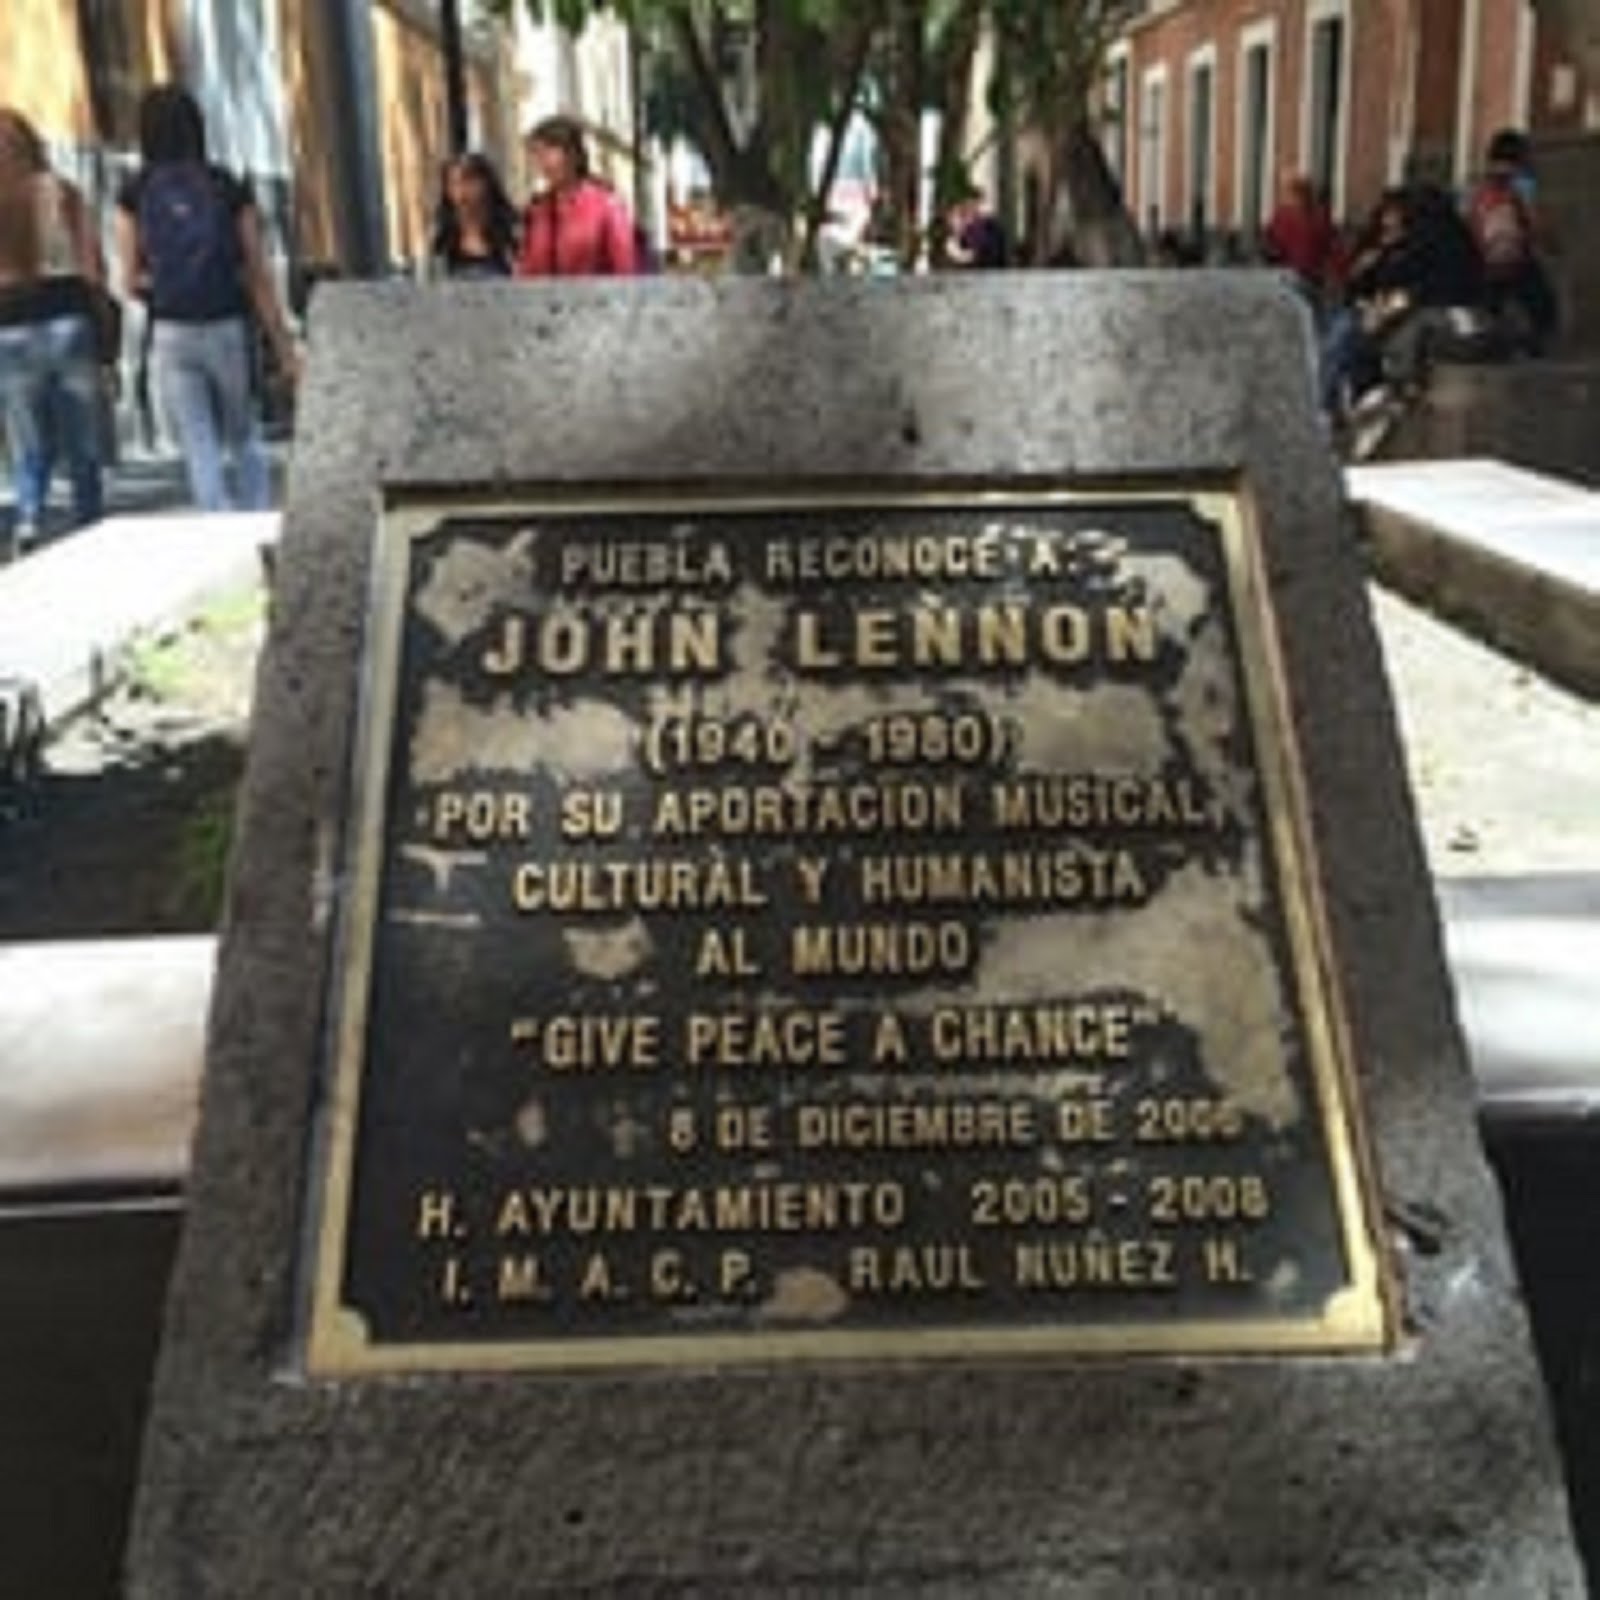 JOHN LENNON'S MEMORIAL